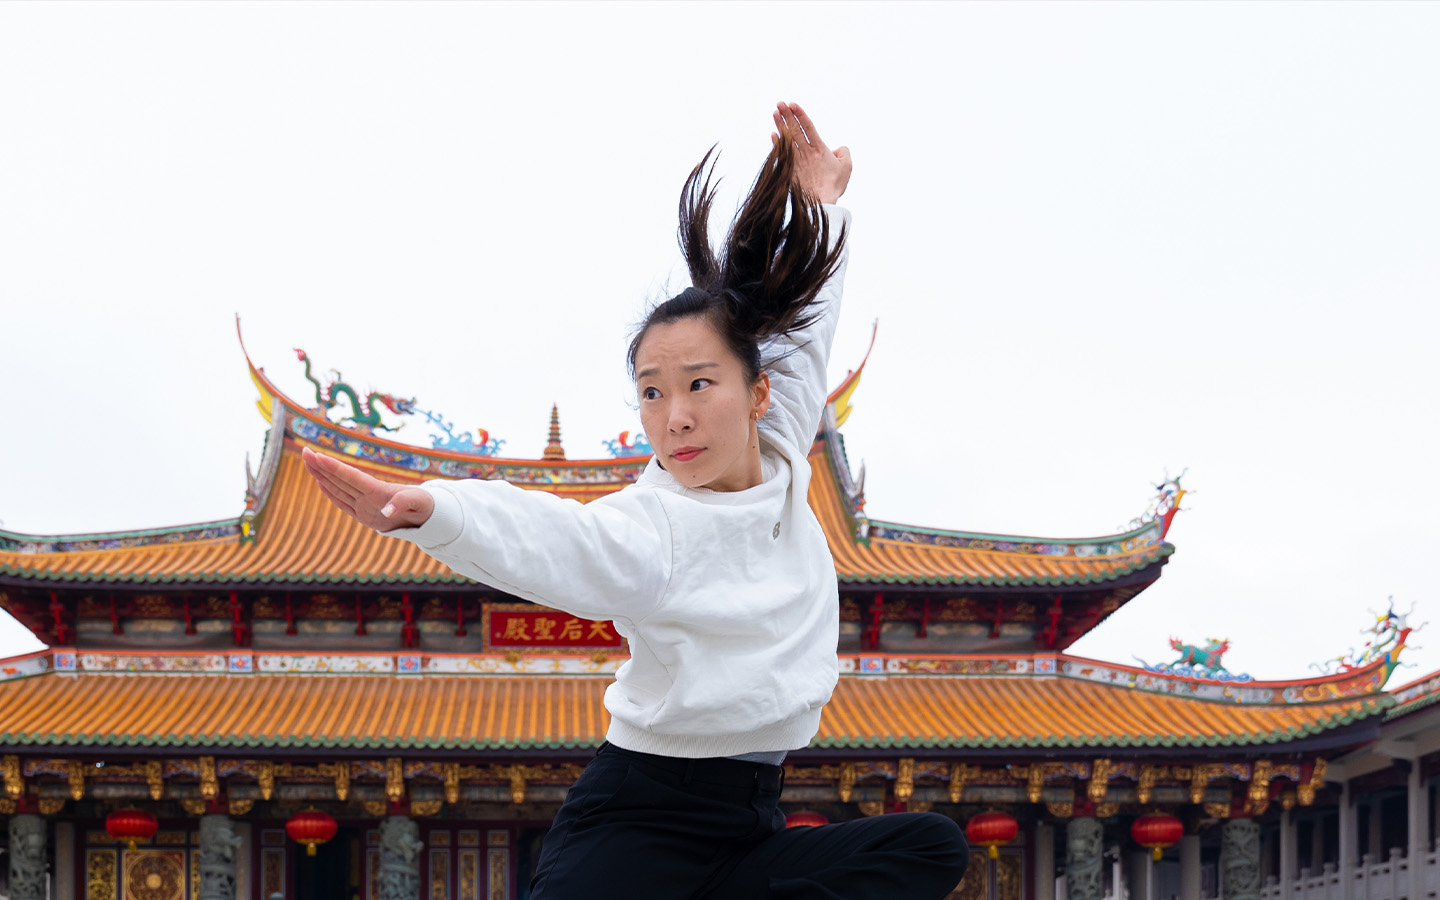 Li Yi Macao Wushu athlete